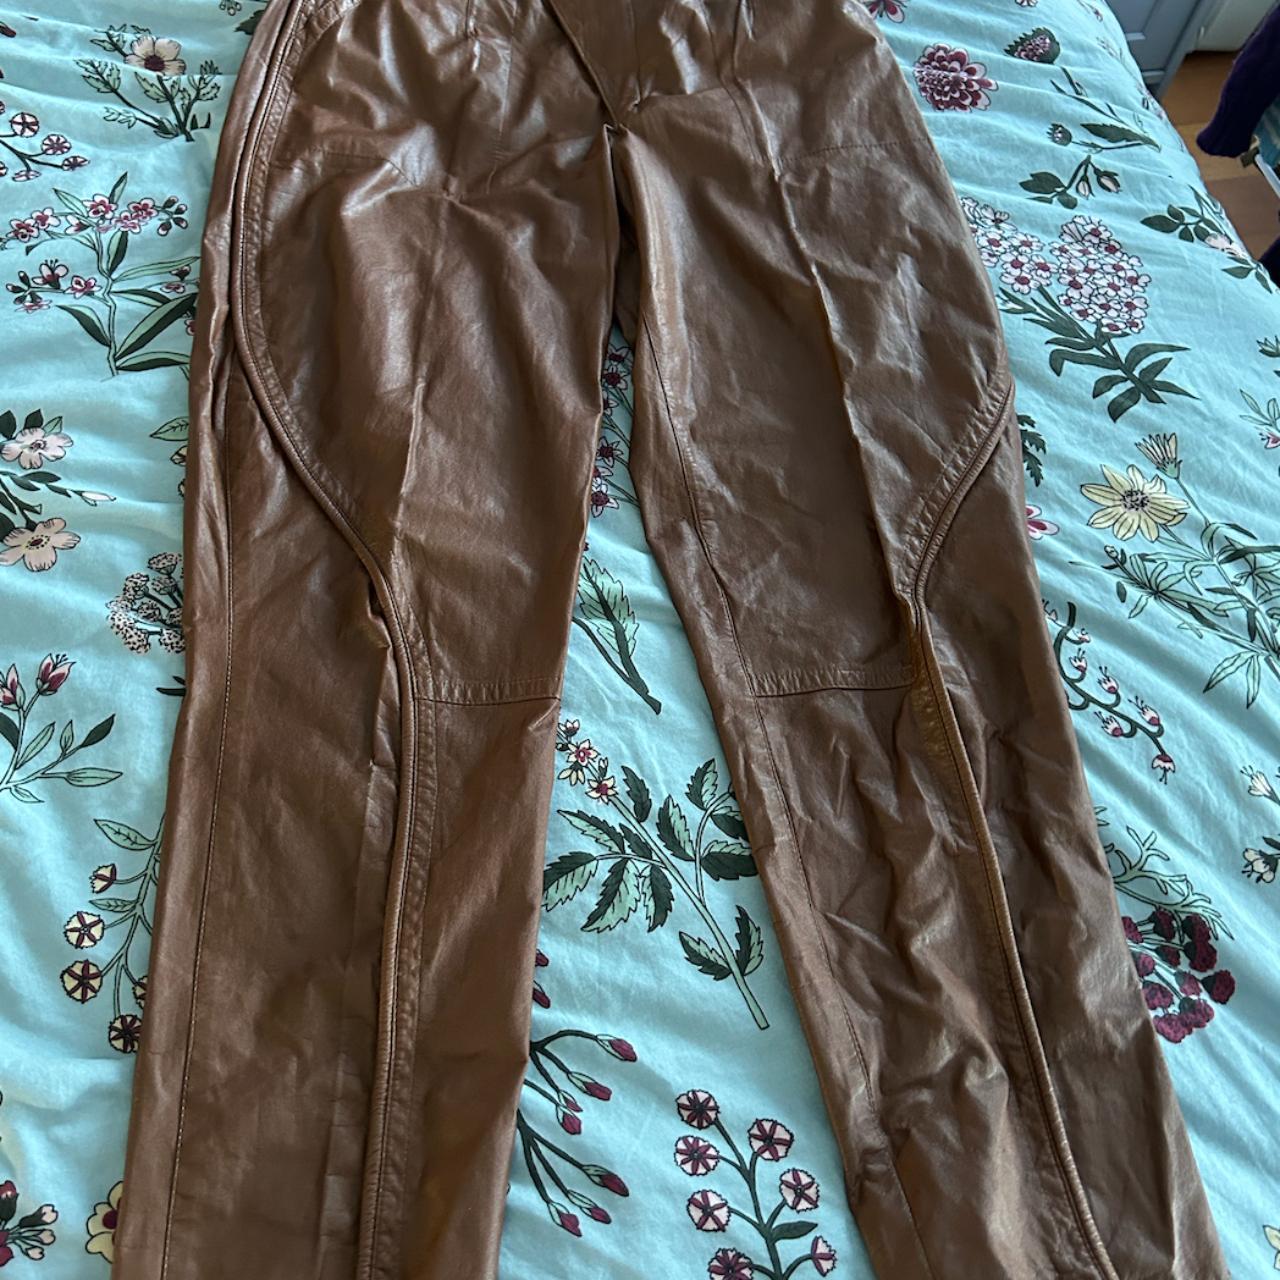 Yamamoto kansai brown leather pants, size 28 but... - Depop